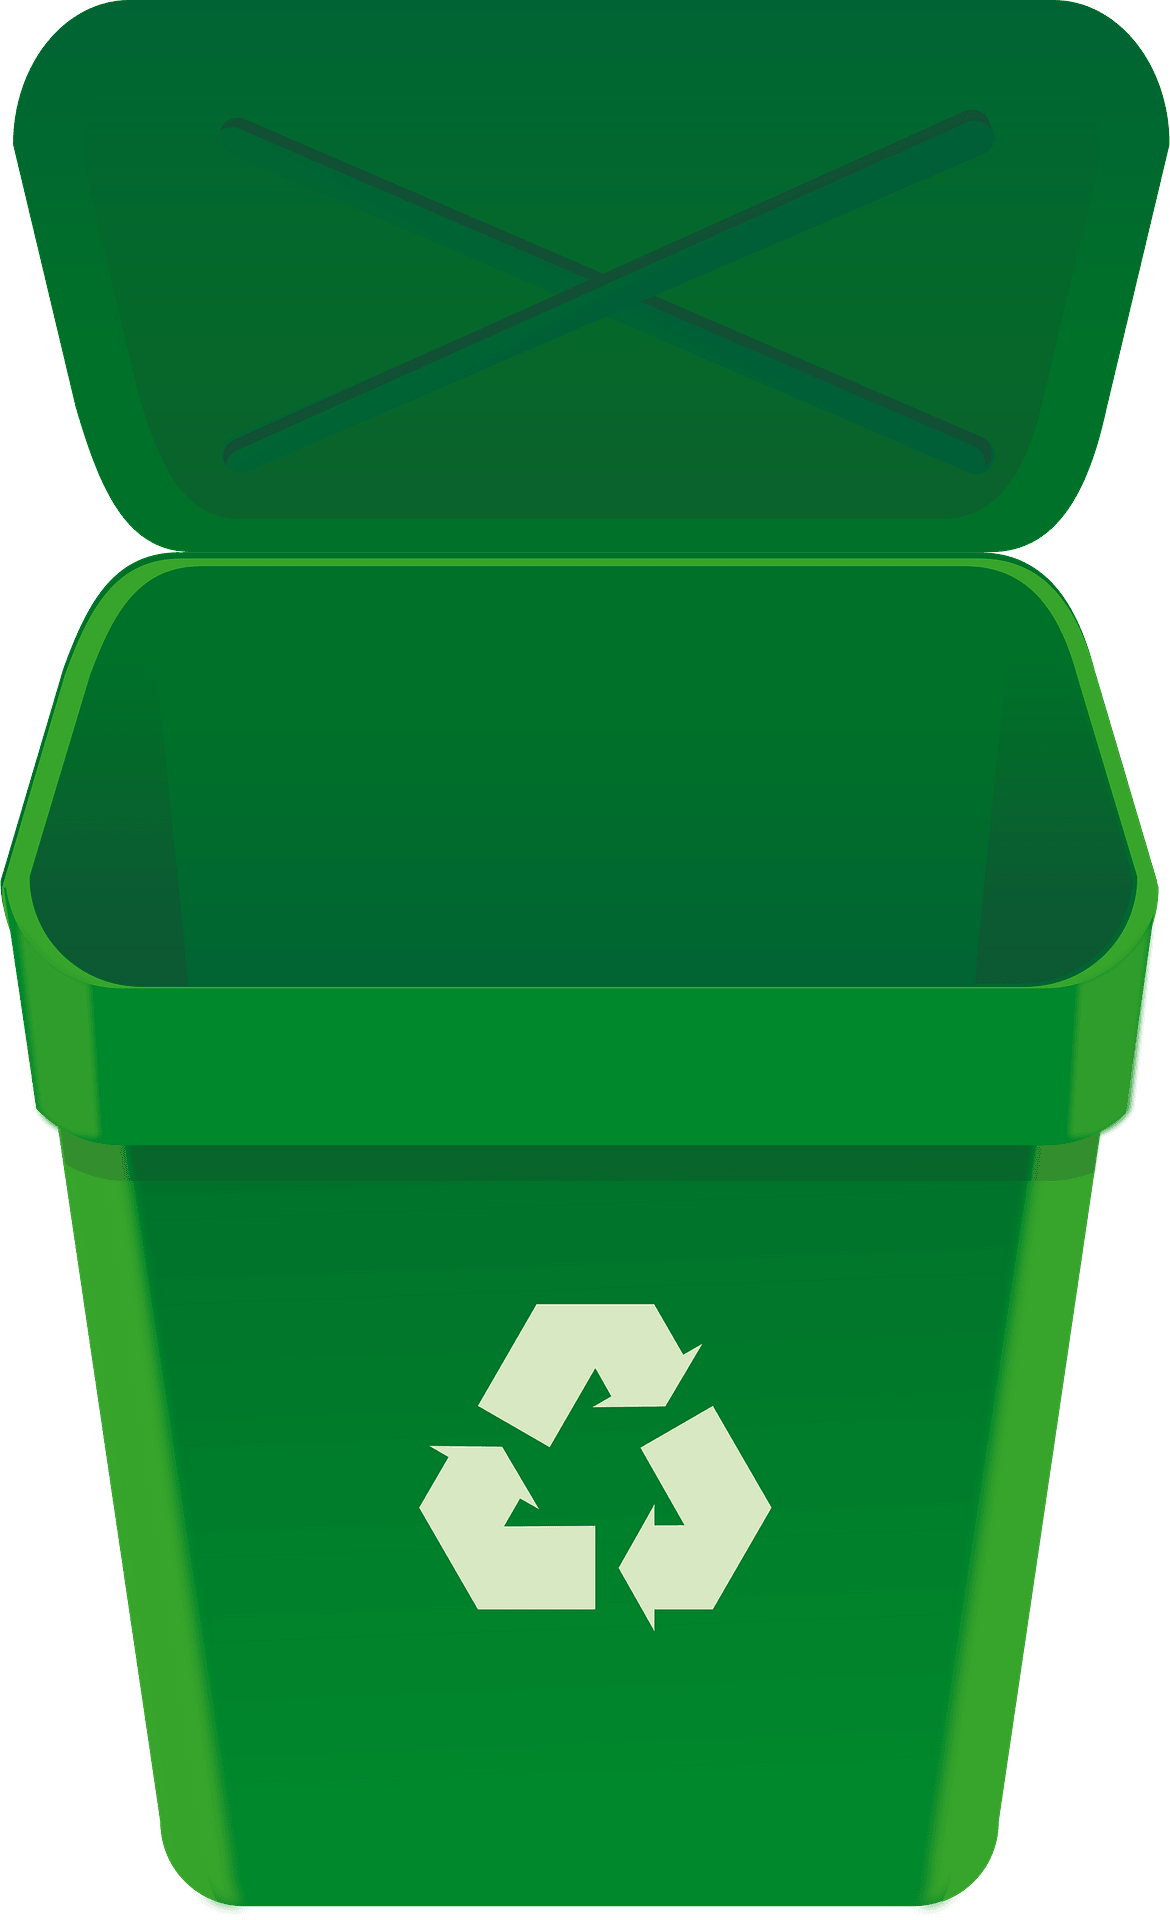 Открытая мусорка. Мусорный коньейнеодля утилизации. Мусорный контейнер для переработки. Мусорный контейнер зеленый. Зелёные контейнеры для переработки.